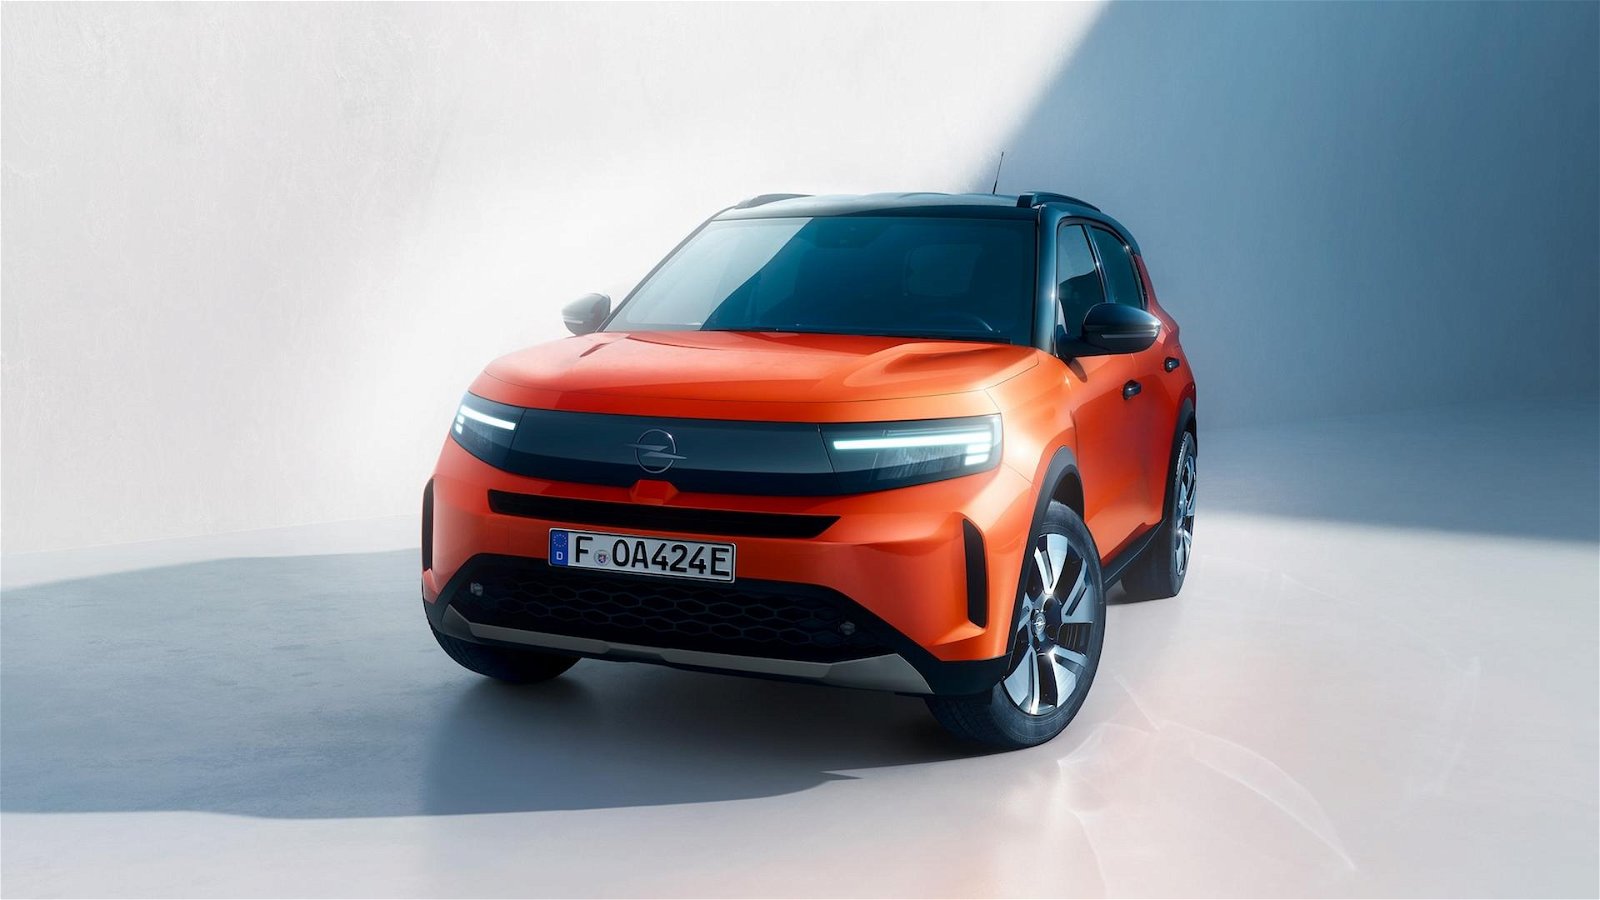 Elektrisch oder Hybrid: Der neue Opel Frontera